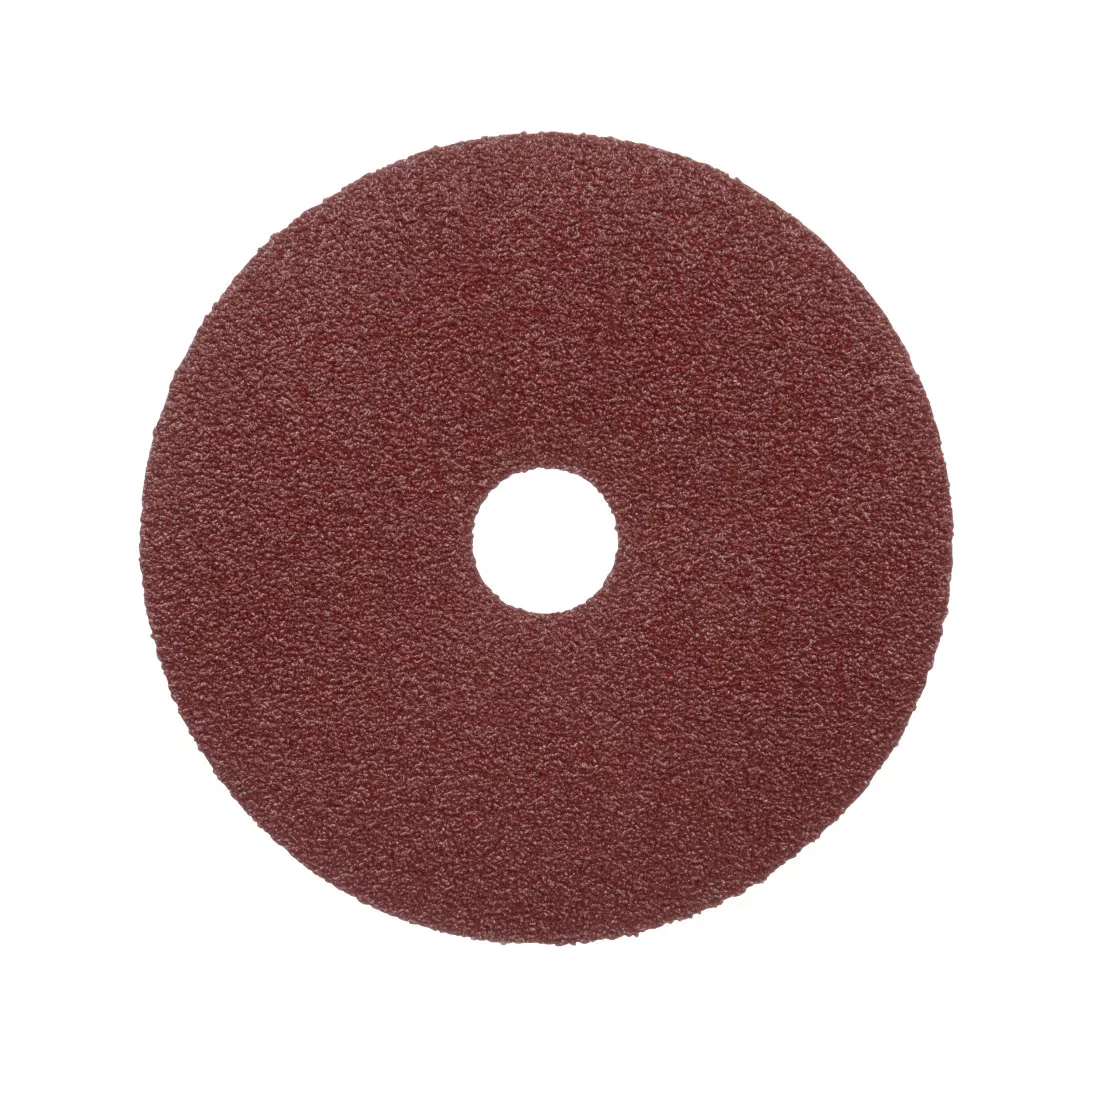 Standard Abrasives™ Ceramic Pro Resin Fiber Disc, 530255, 7 in x 7/8 in
50, 25 per inner 100 per case